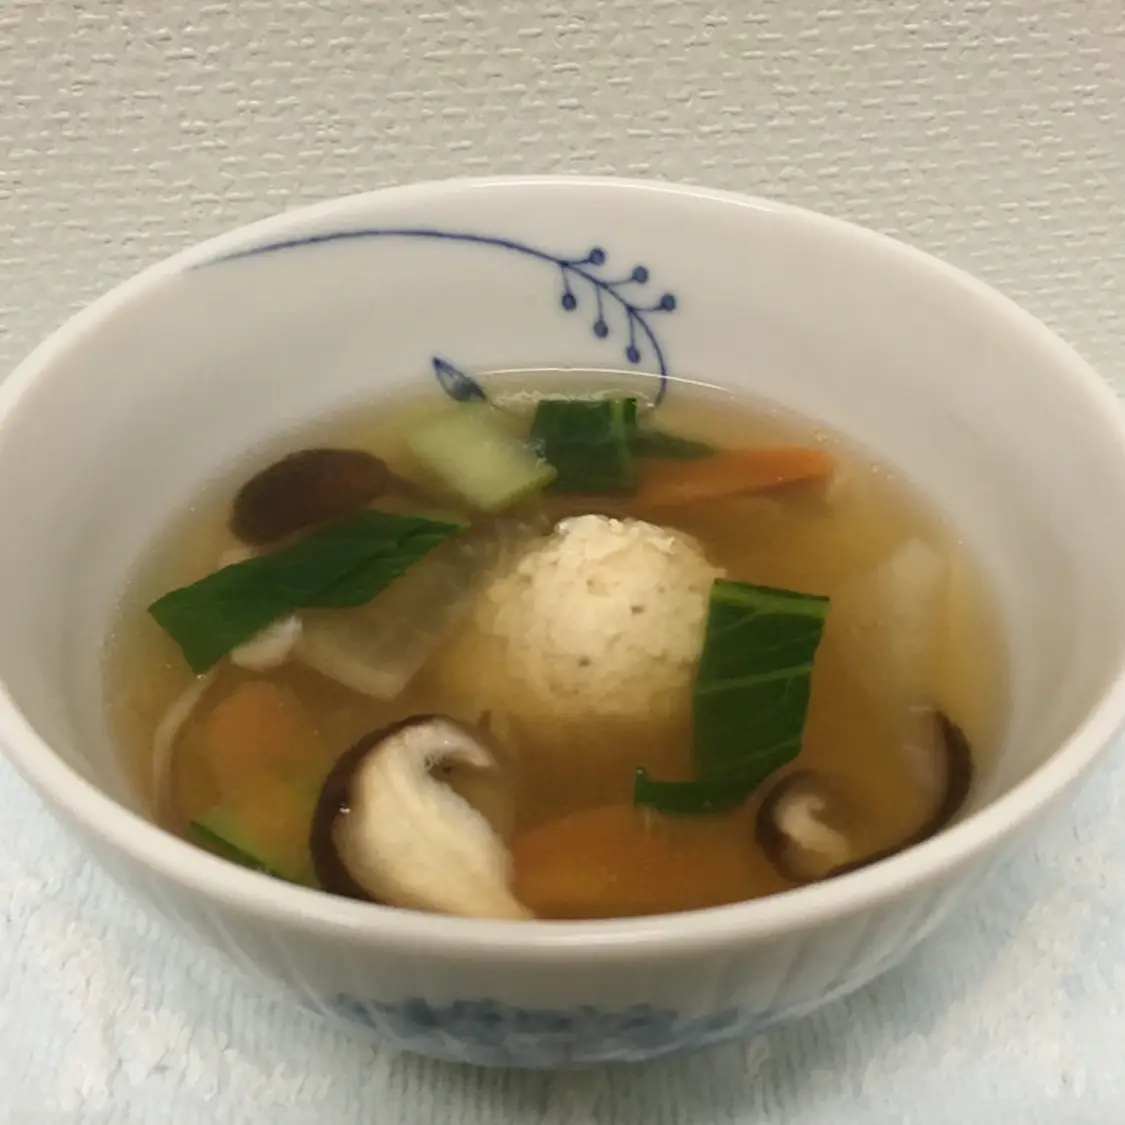 簡単♪ 鶏団子の中華春雨スープ 10分